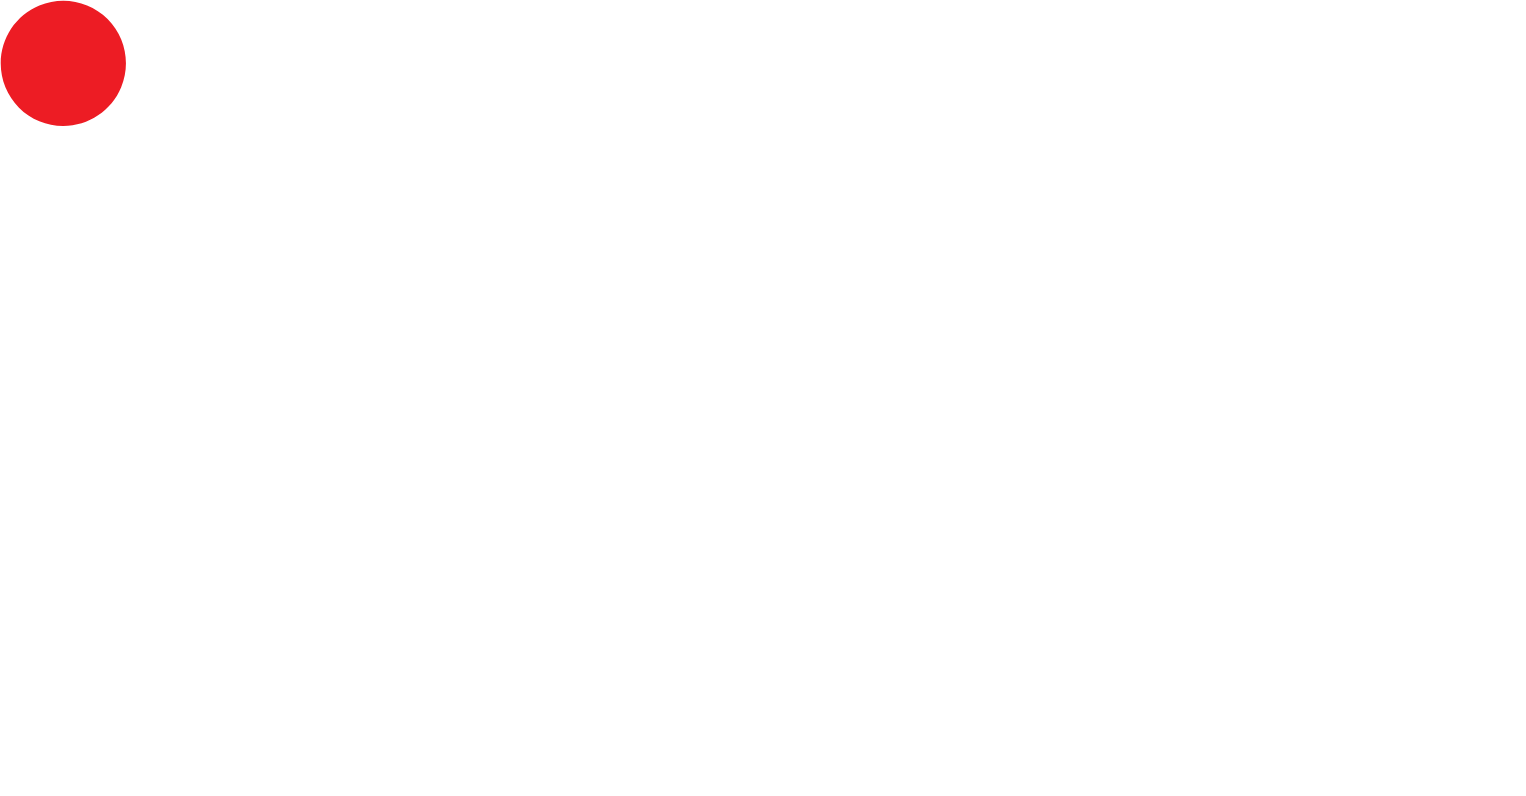 Indosat logo pour fonds sombres (PNG transparent)